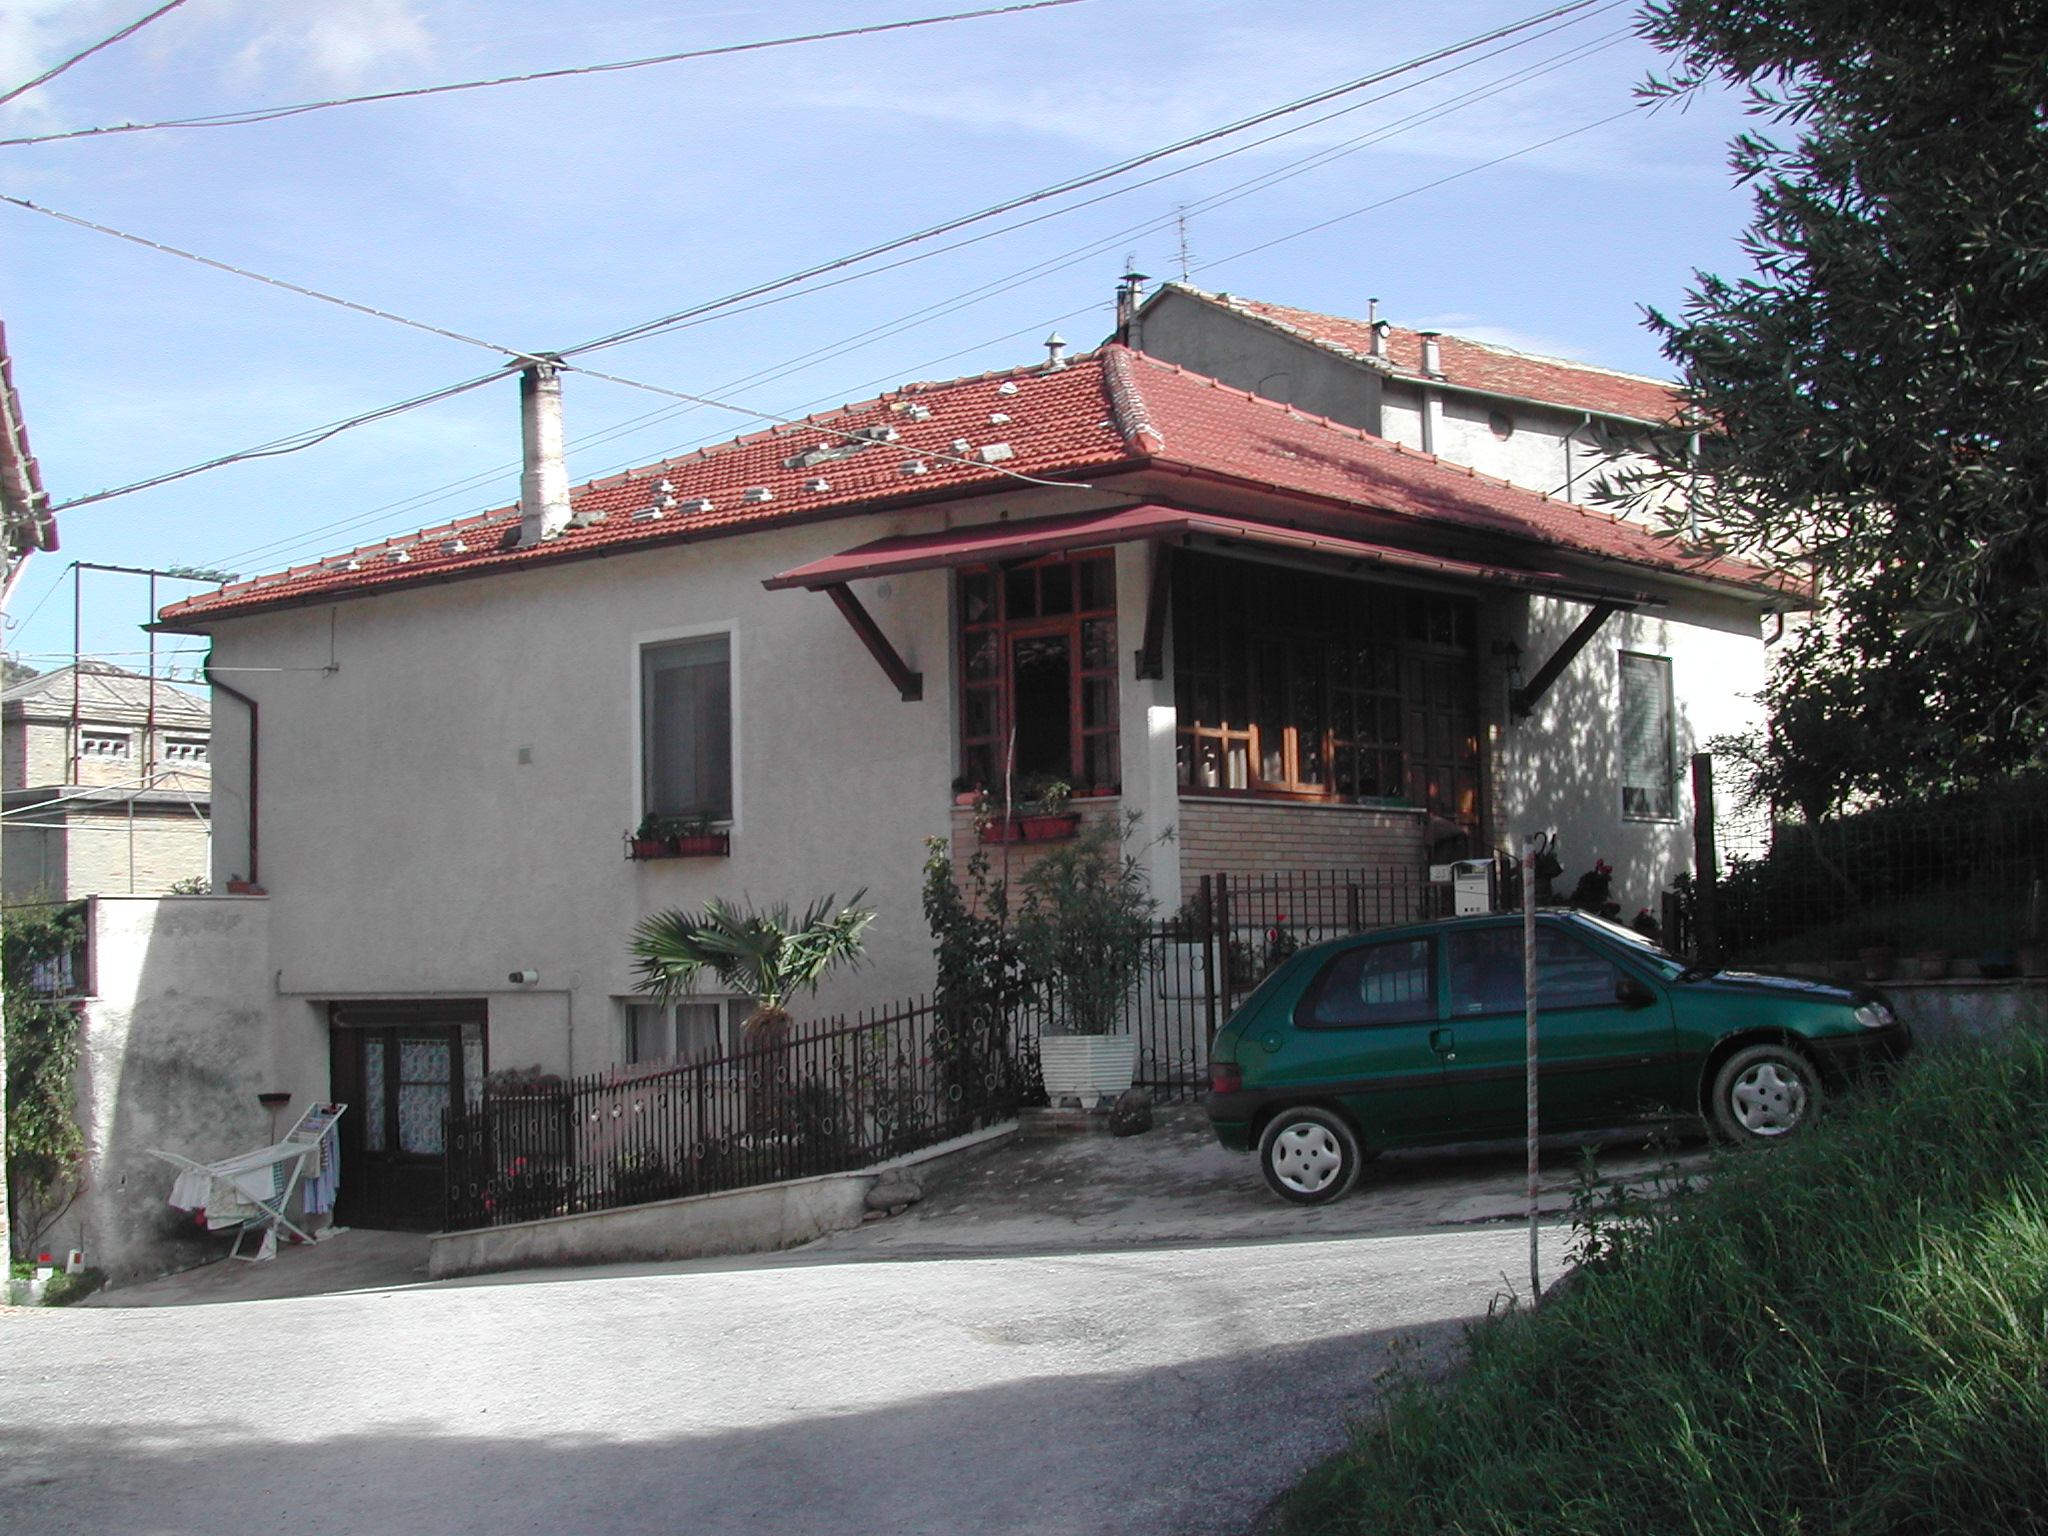 Casa isolata (casa isolata) - San Severino Marche (MC) 